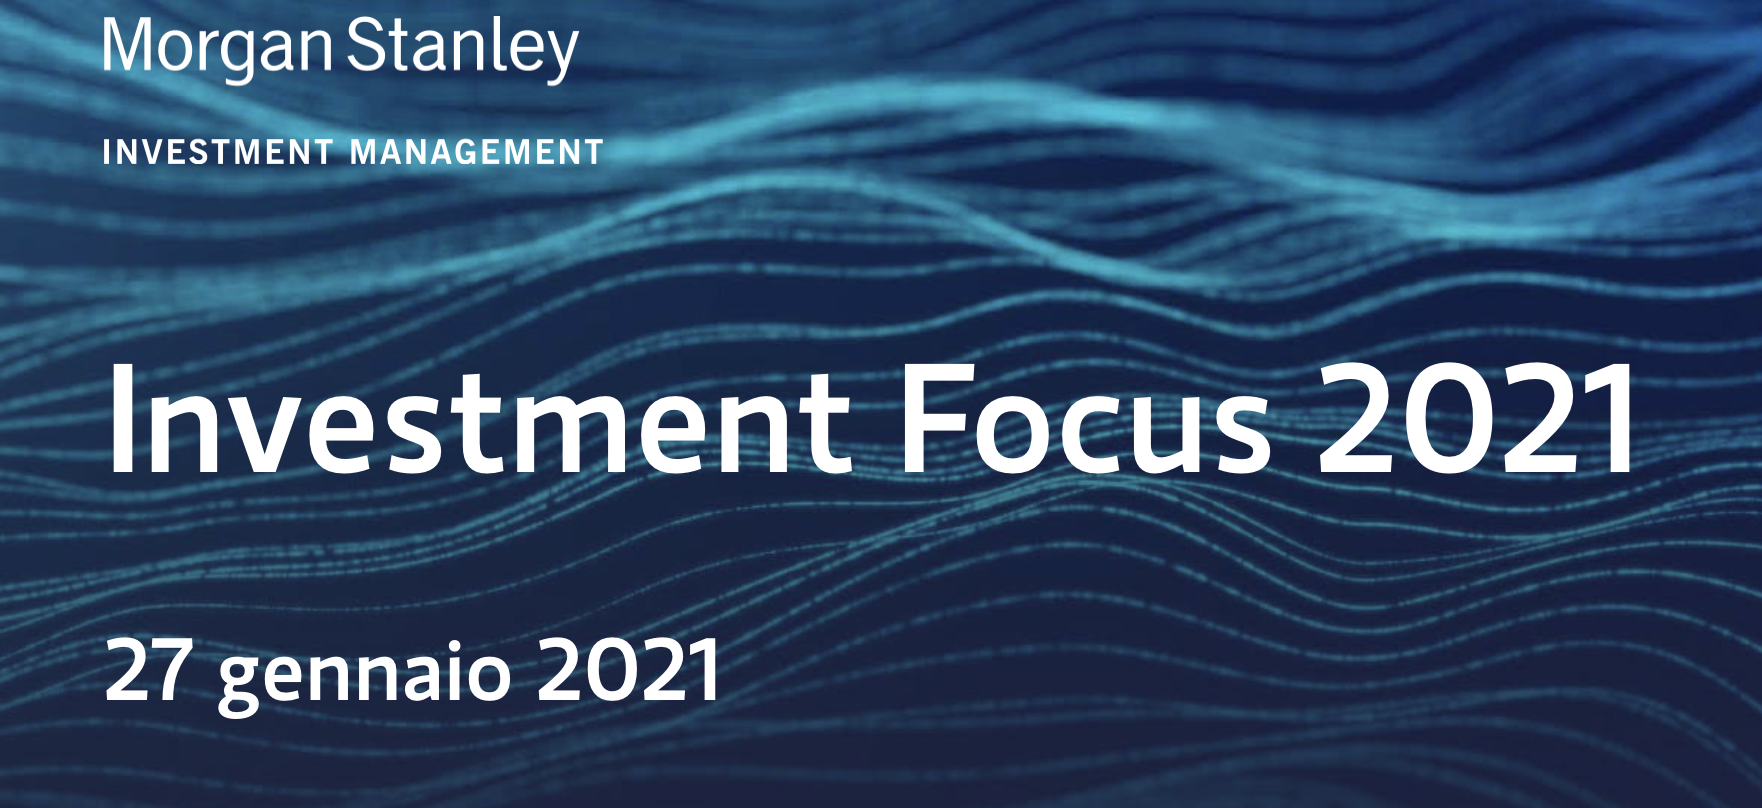 Morgan Stanley - Investment Focus 2021 - 27 gennaio